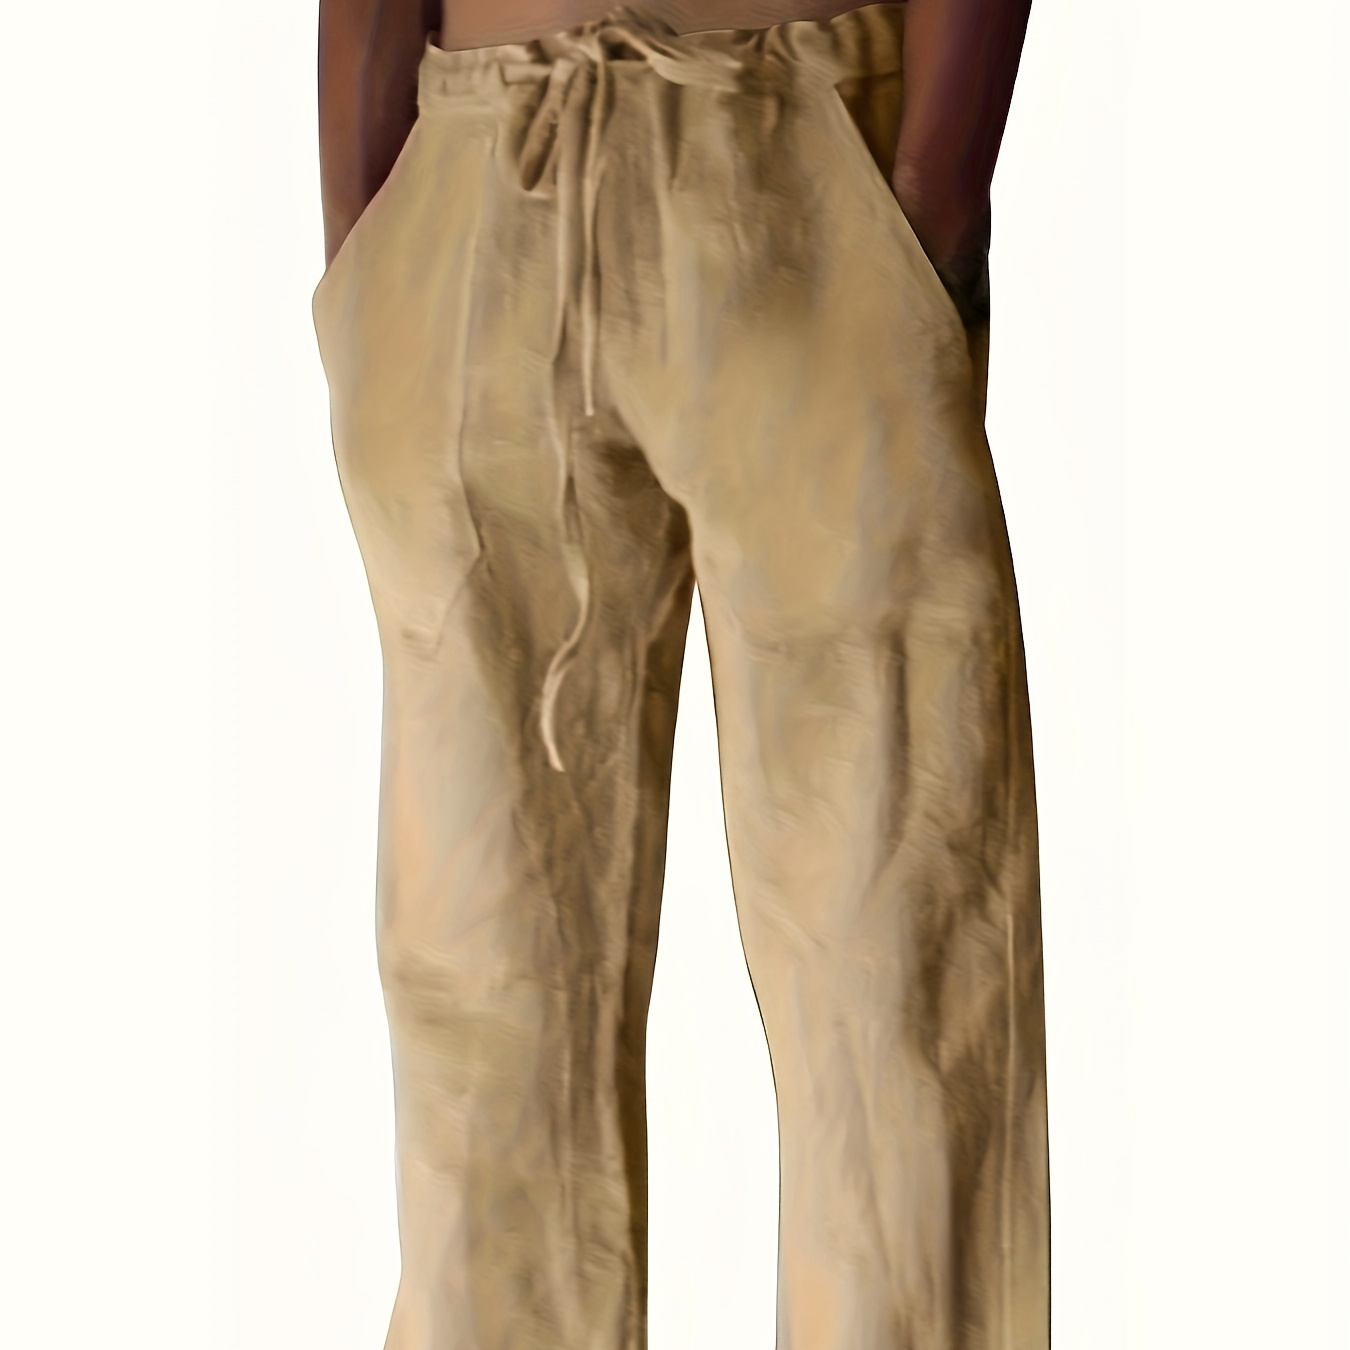 

Men's Wide Leg Cotton Pants Beach Pant Reto Casual Baggy Pants Yoga Trousers Streetwear Hiphop Rapper Style, Fluid Pants